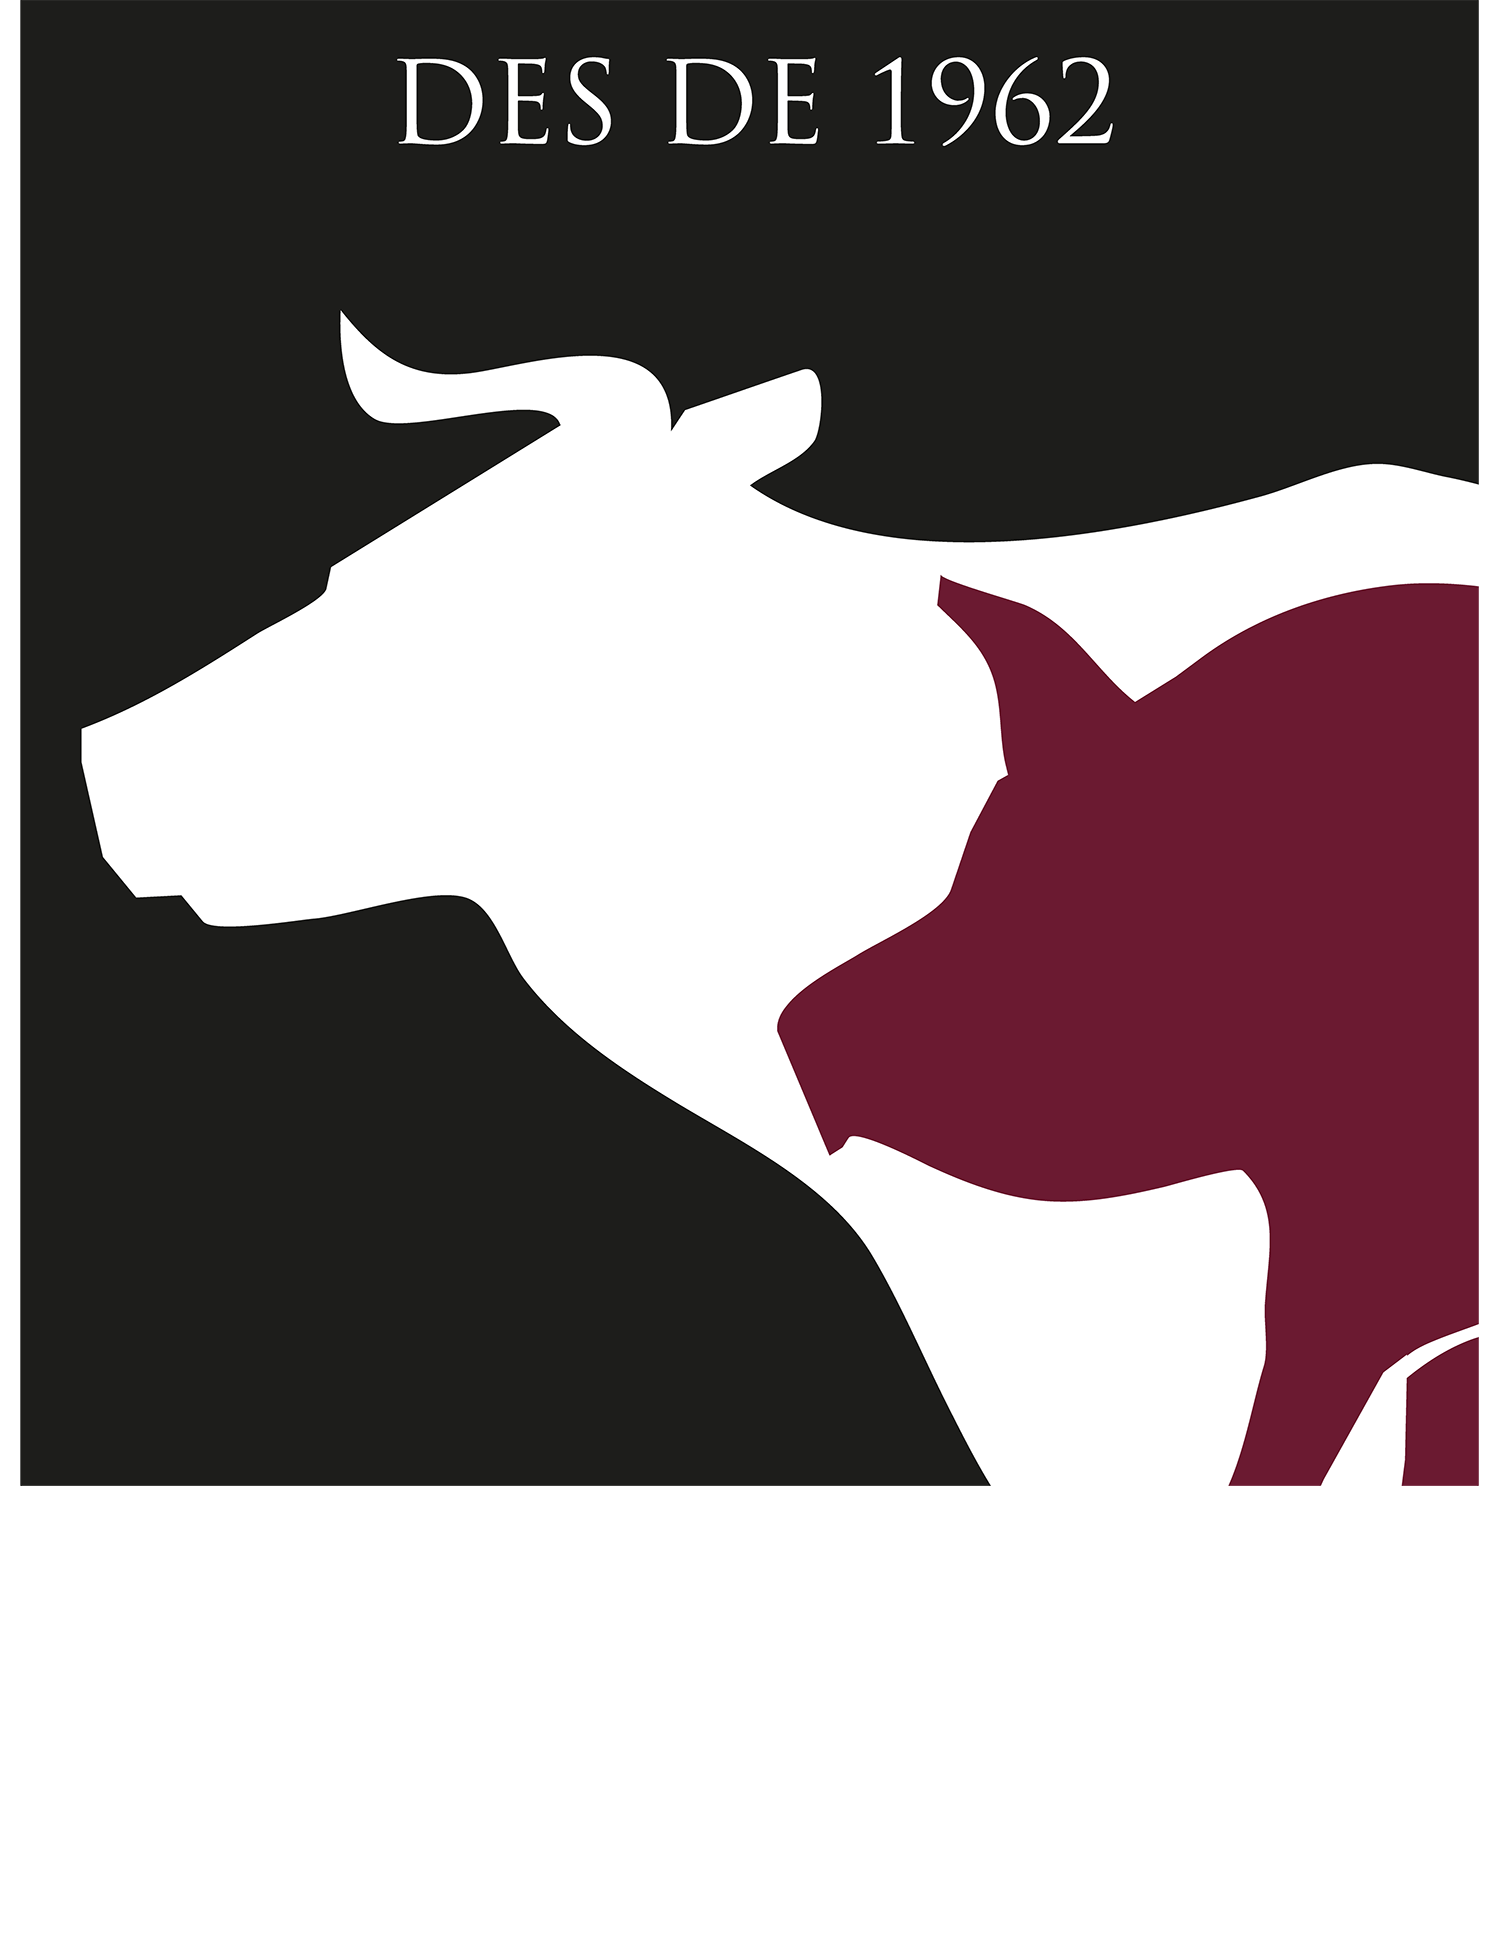 Logotipo Casa Miró